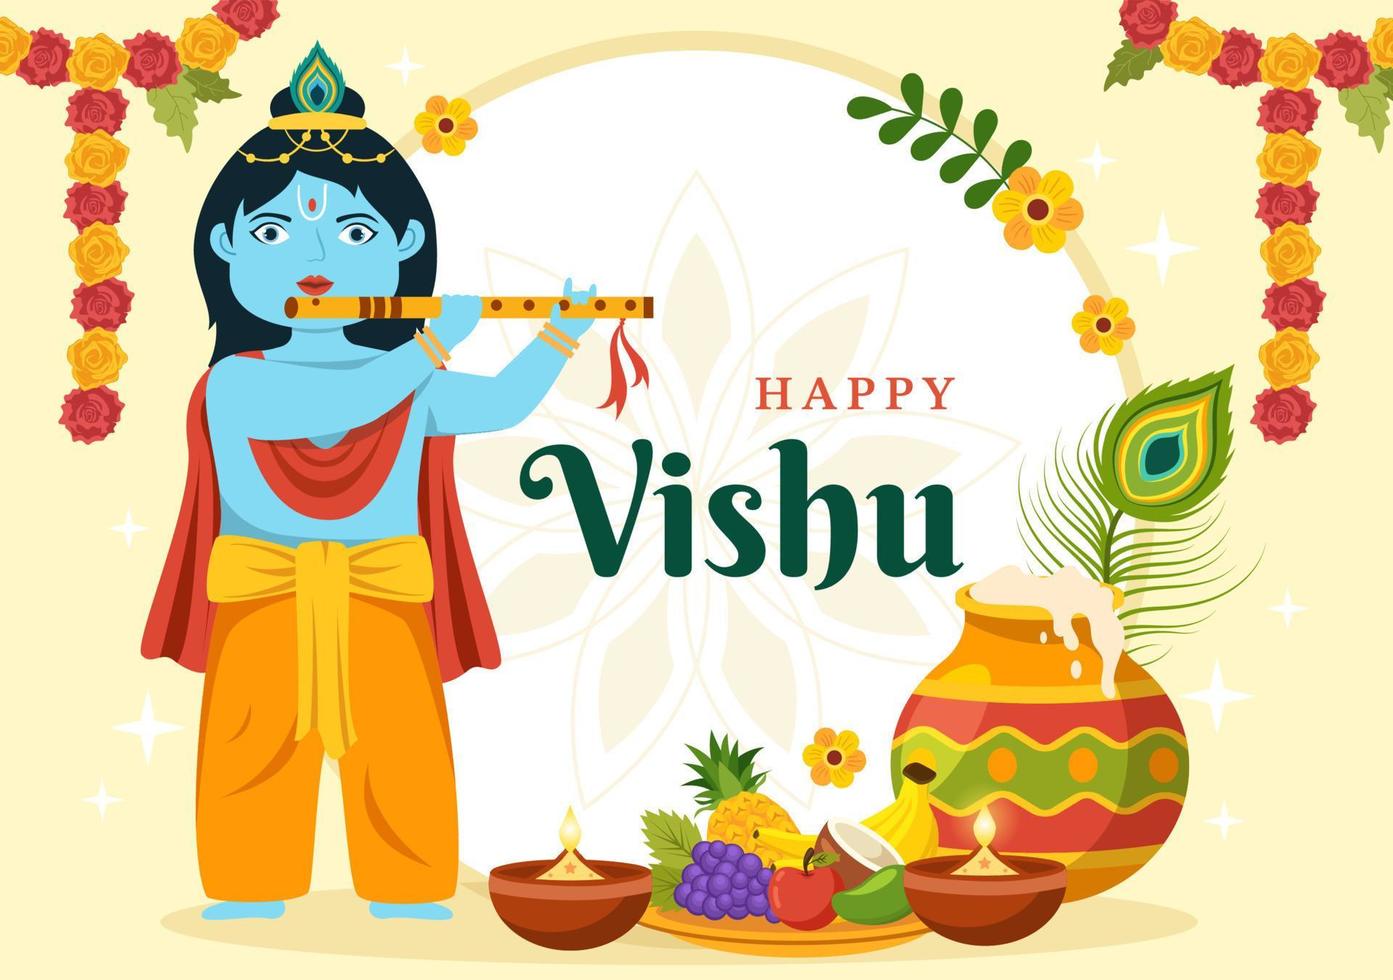 contento vishu festival ilustración con tradicional kerala kani, frutas y vegetales para aterrizaje página en plano dibujos animados mano dibujado plantillas vector